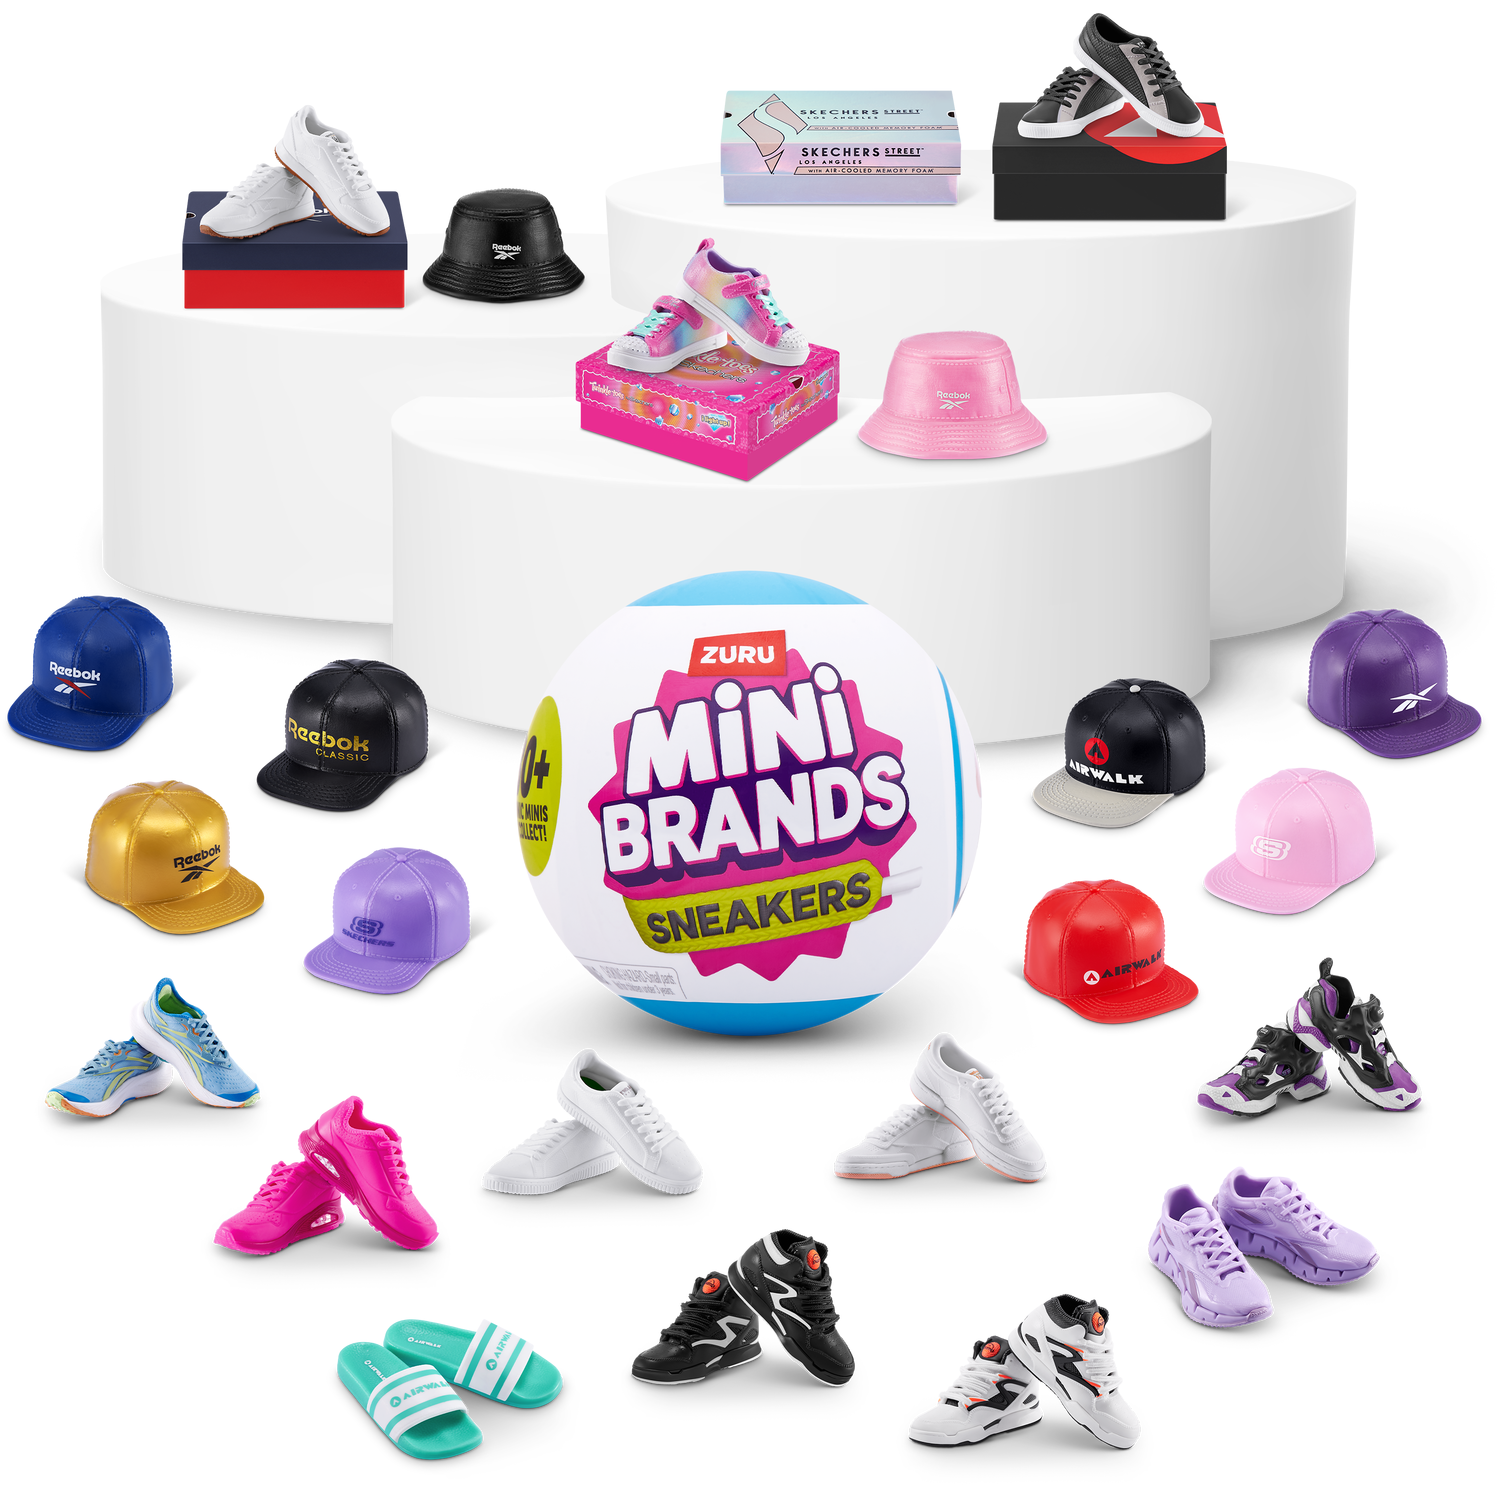 Mini Brands Sneakers Image 1